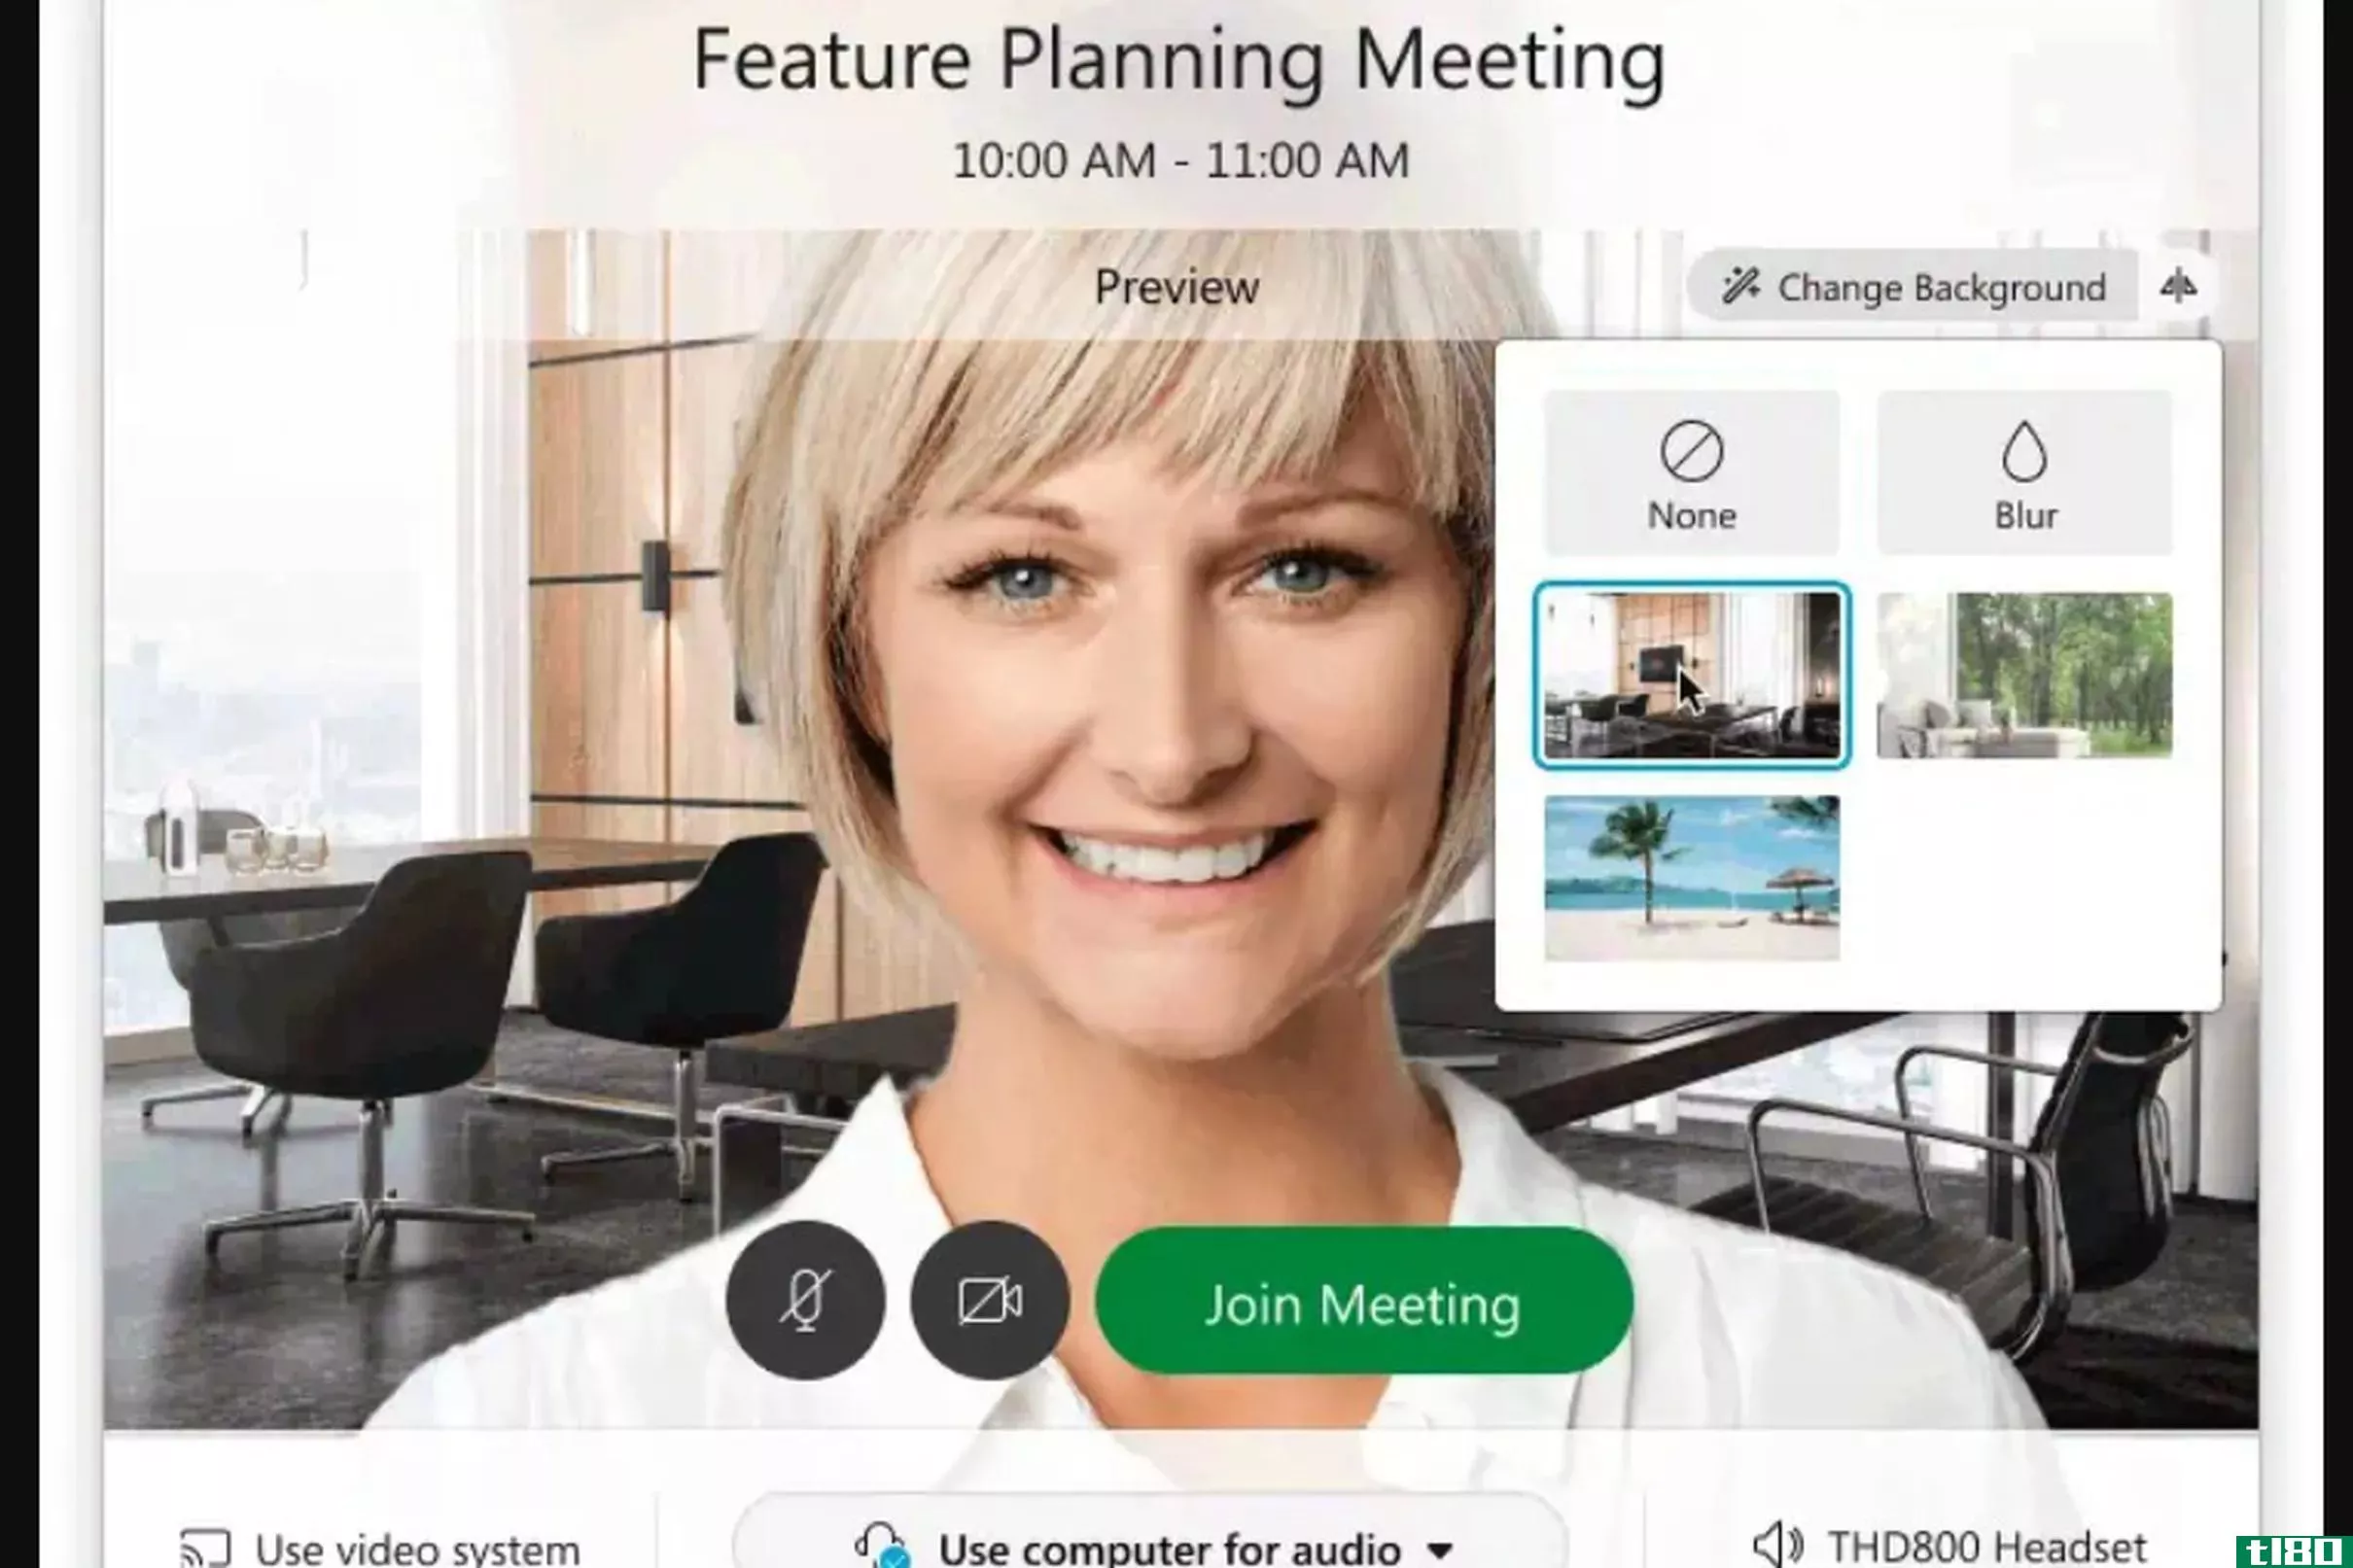 思科的webex视频会议软件现在可以让你设置虚拟背景